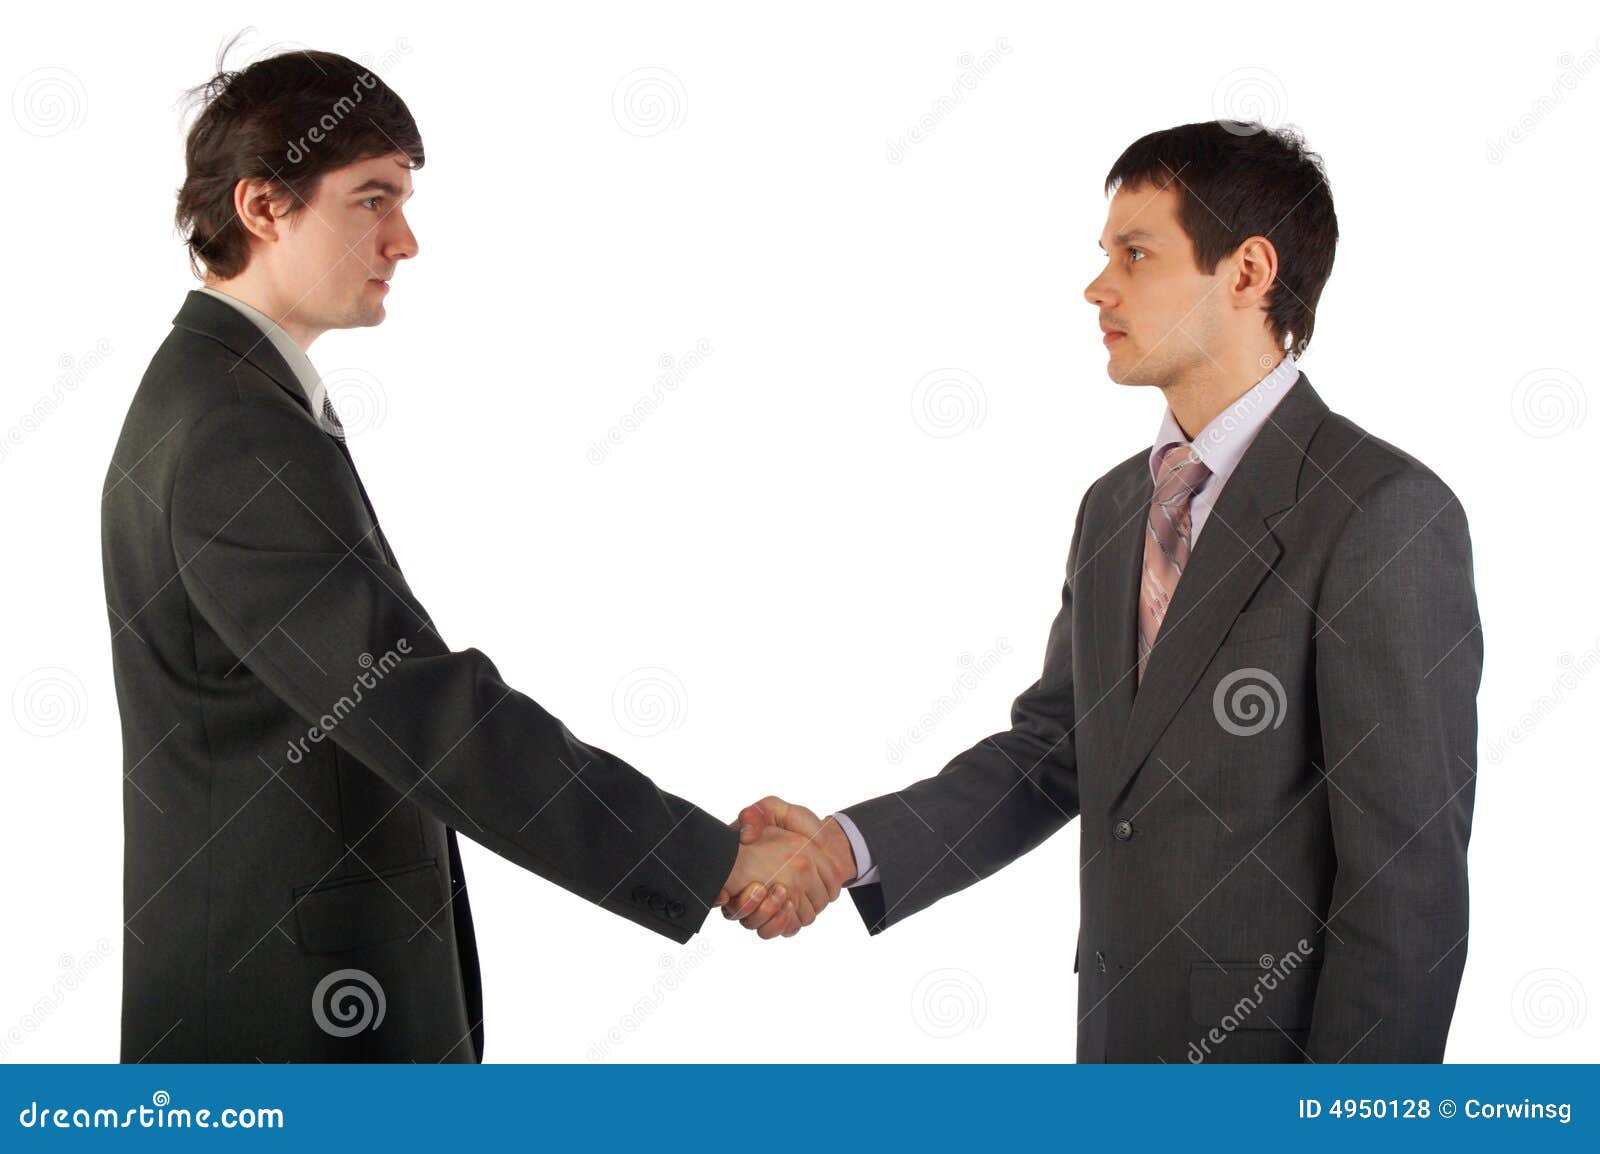 Где второй человек. Люди здороваются. Люди пожимают руки. 2 Человечка пожимают друг другу руки. Двое мужчин пожимают руки.